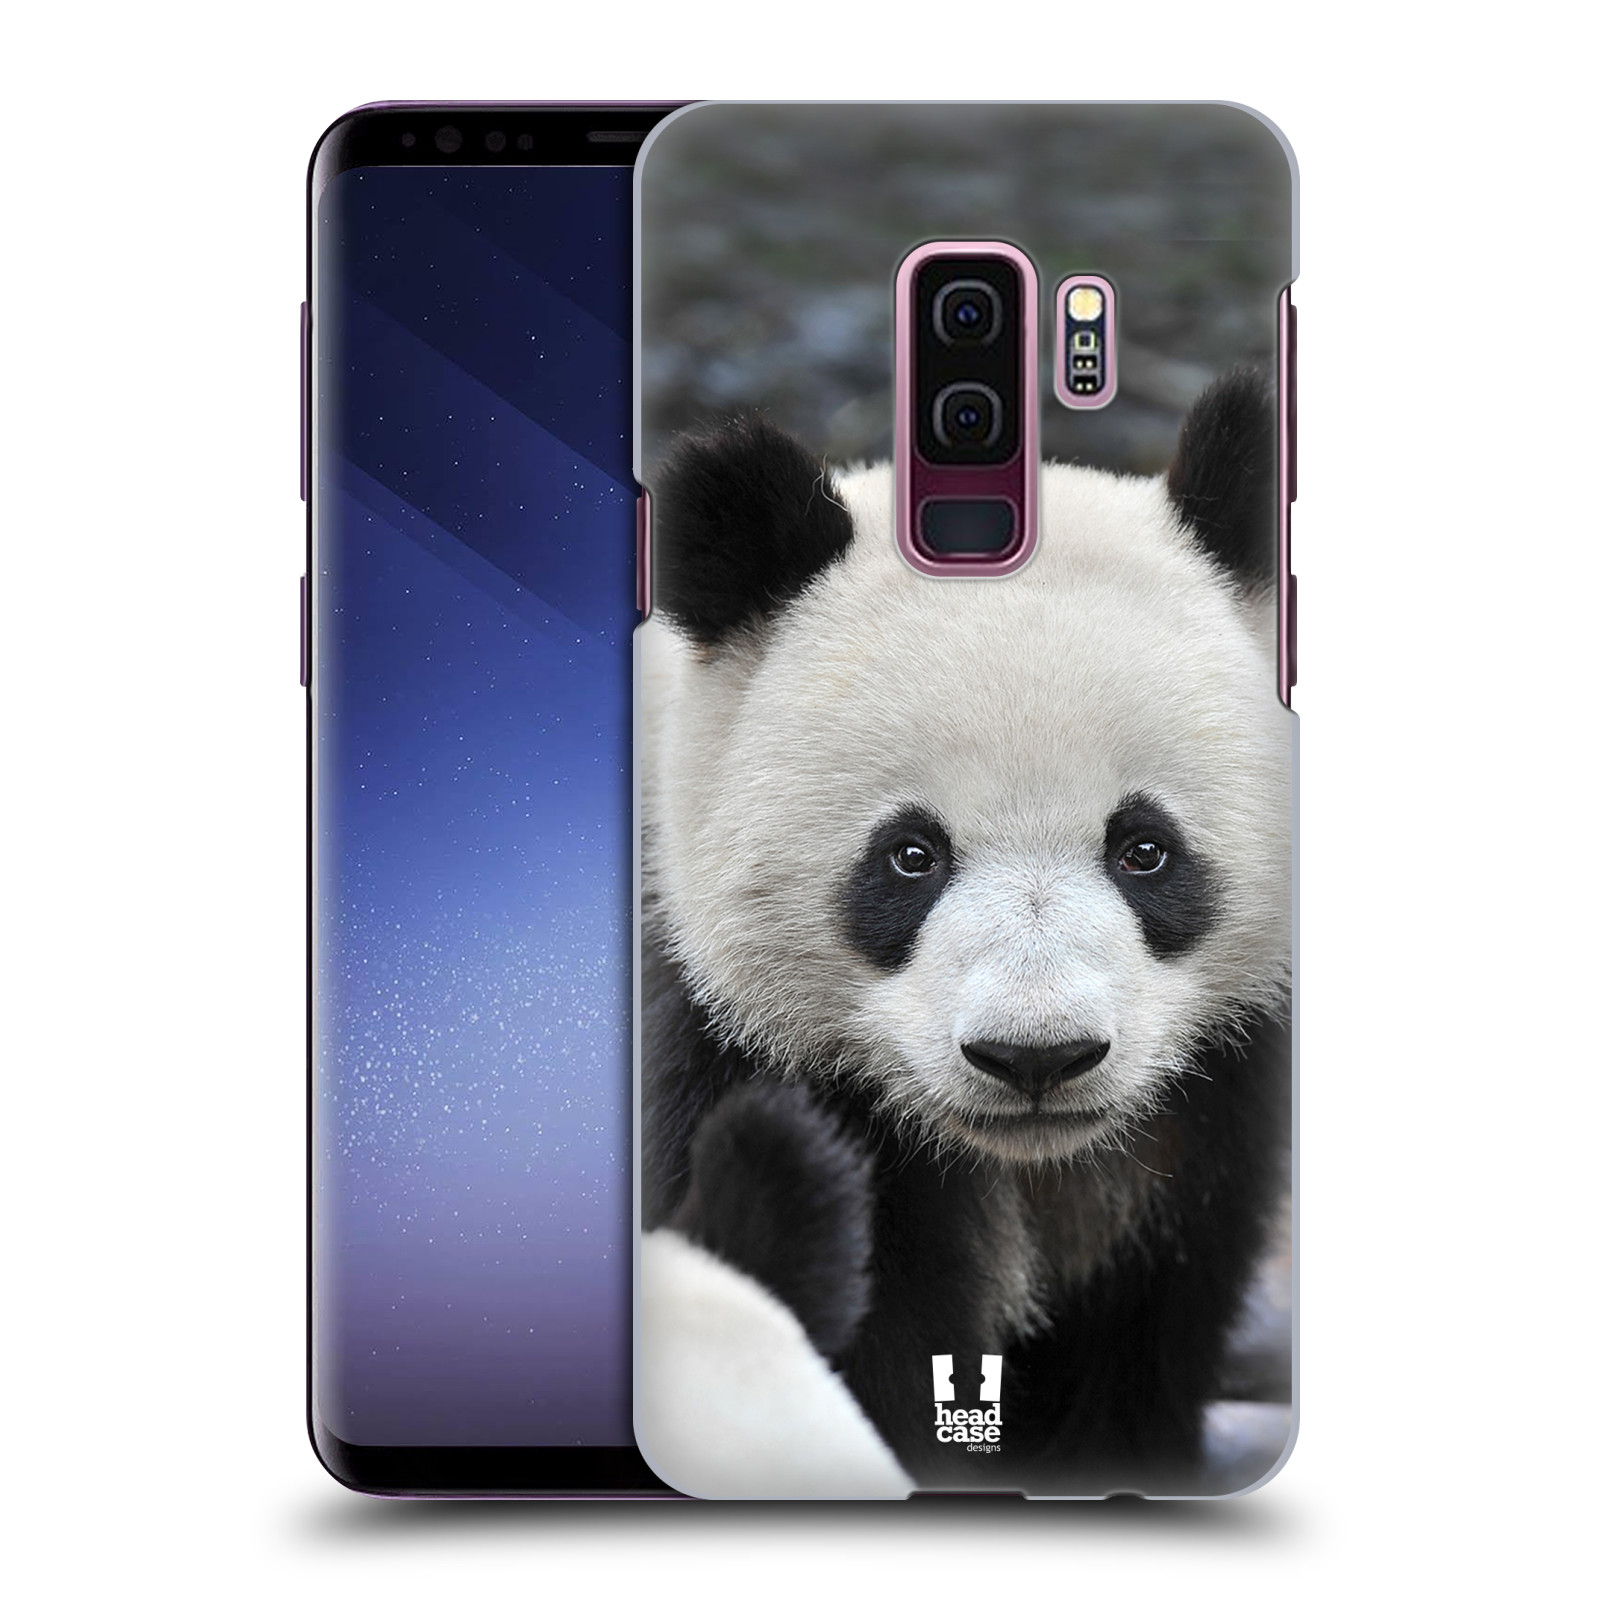 Zadní obal pro mobil Samsung Galaxy S9 PLUS - HEAD CASE - Svět zvířat medvěd panda